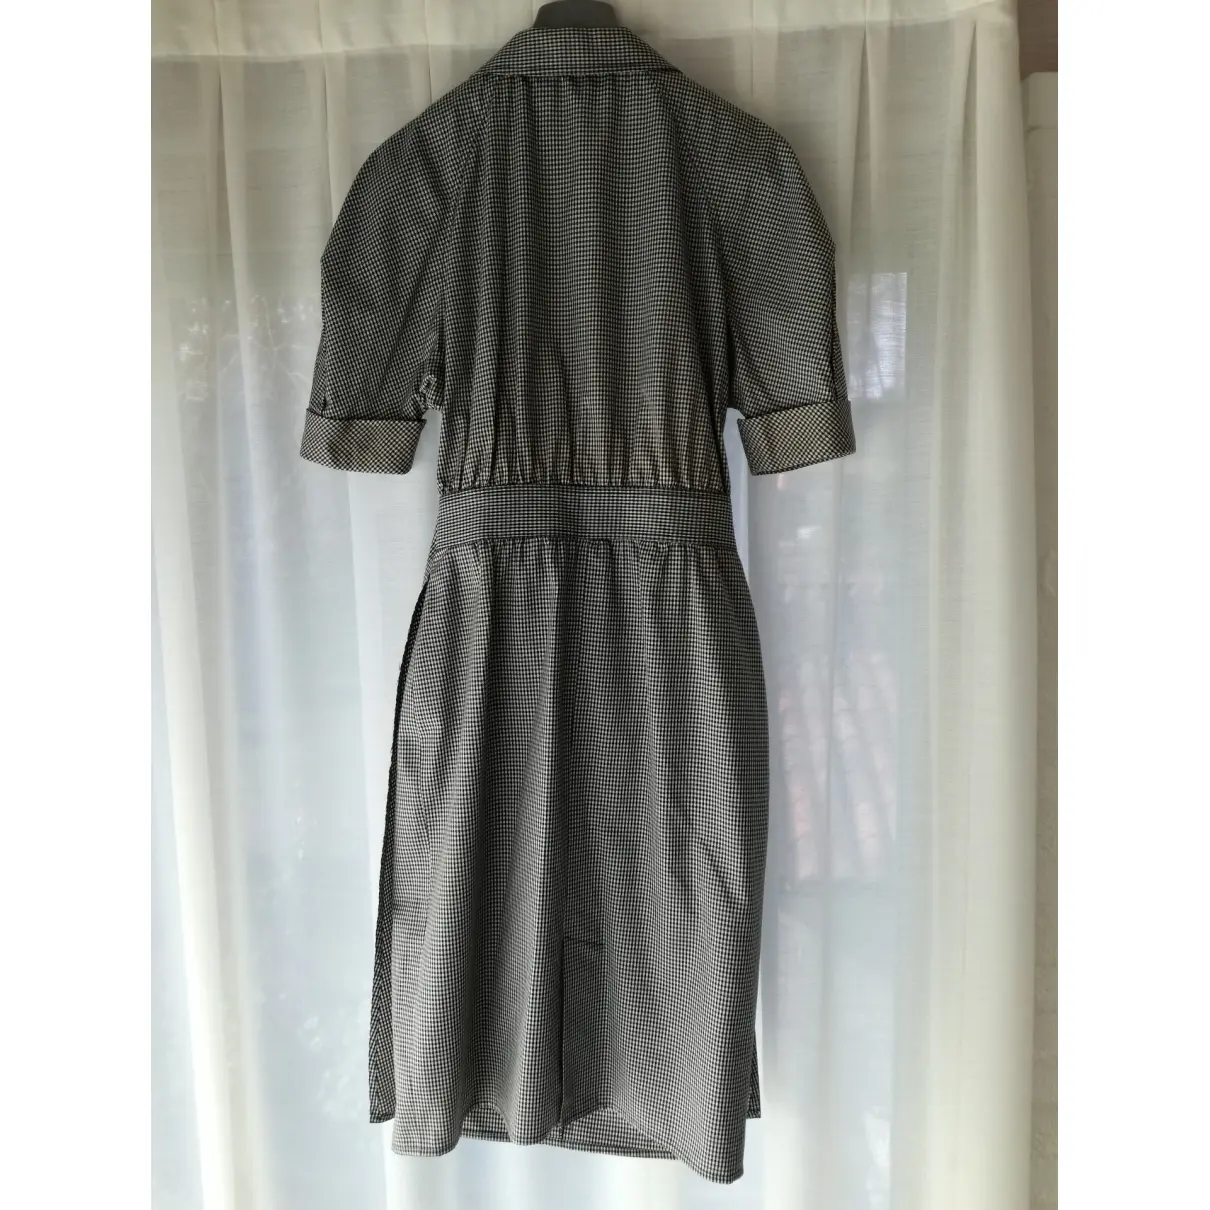 Fendi Mid-length dress for sale - Vintage